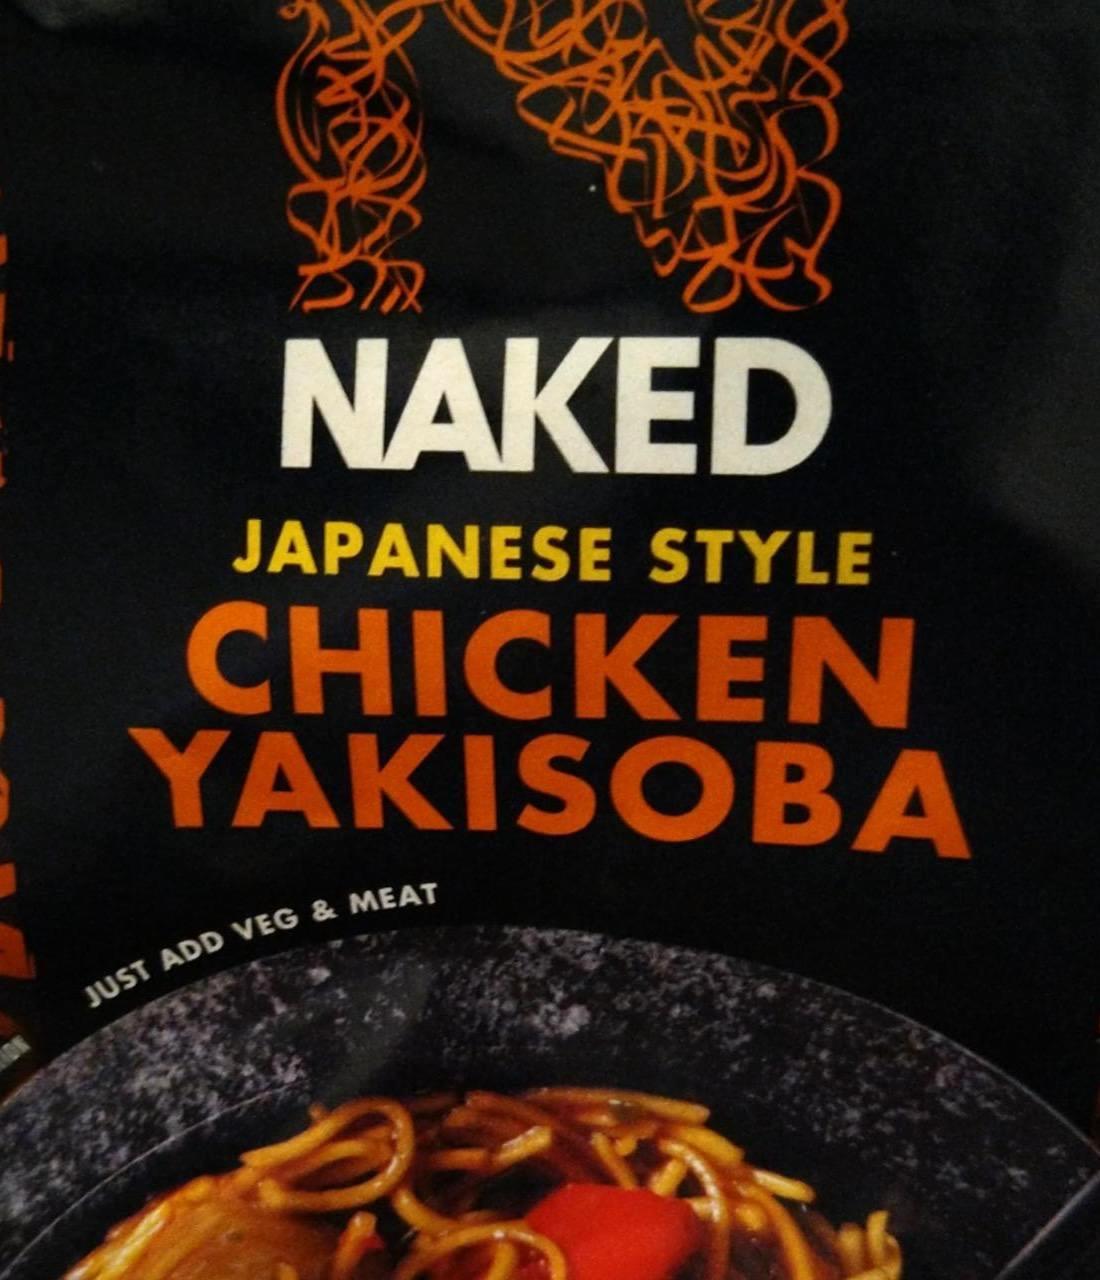 Képek - Japanes style chicken yakisoba Naked